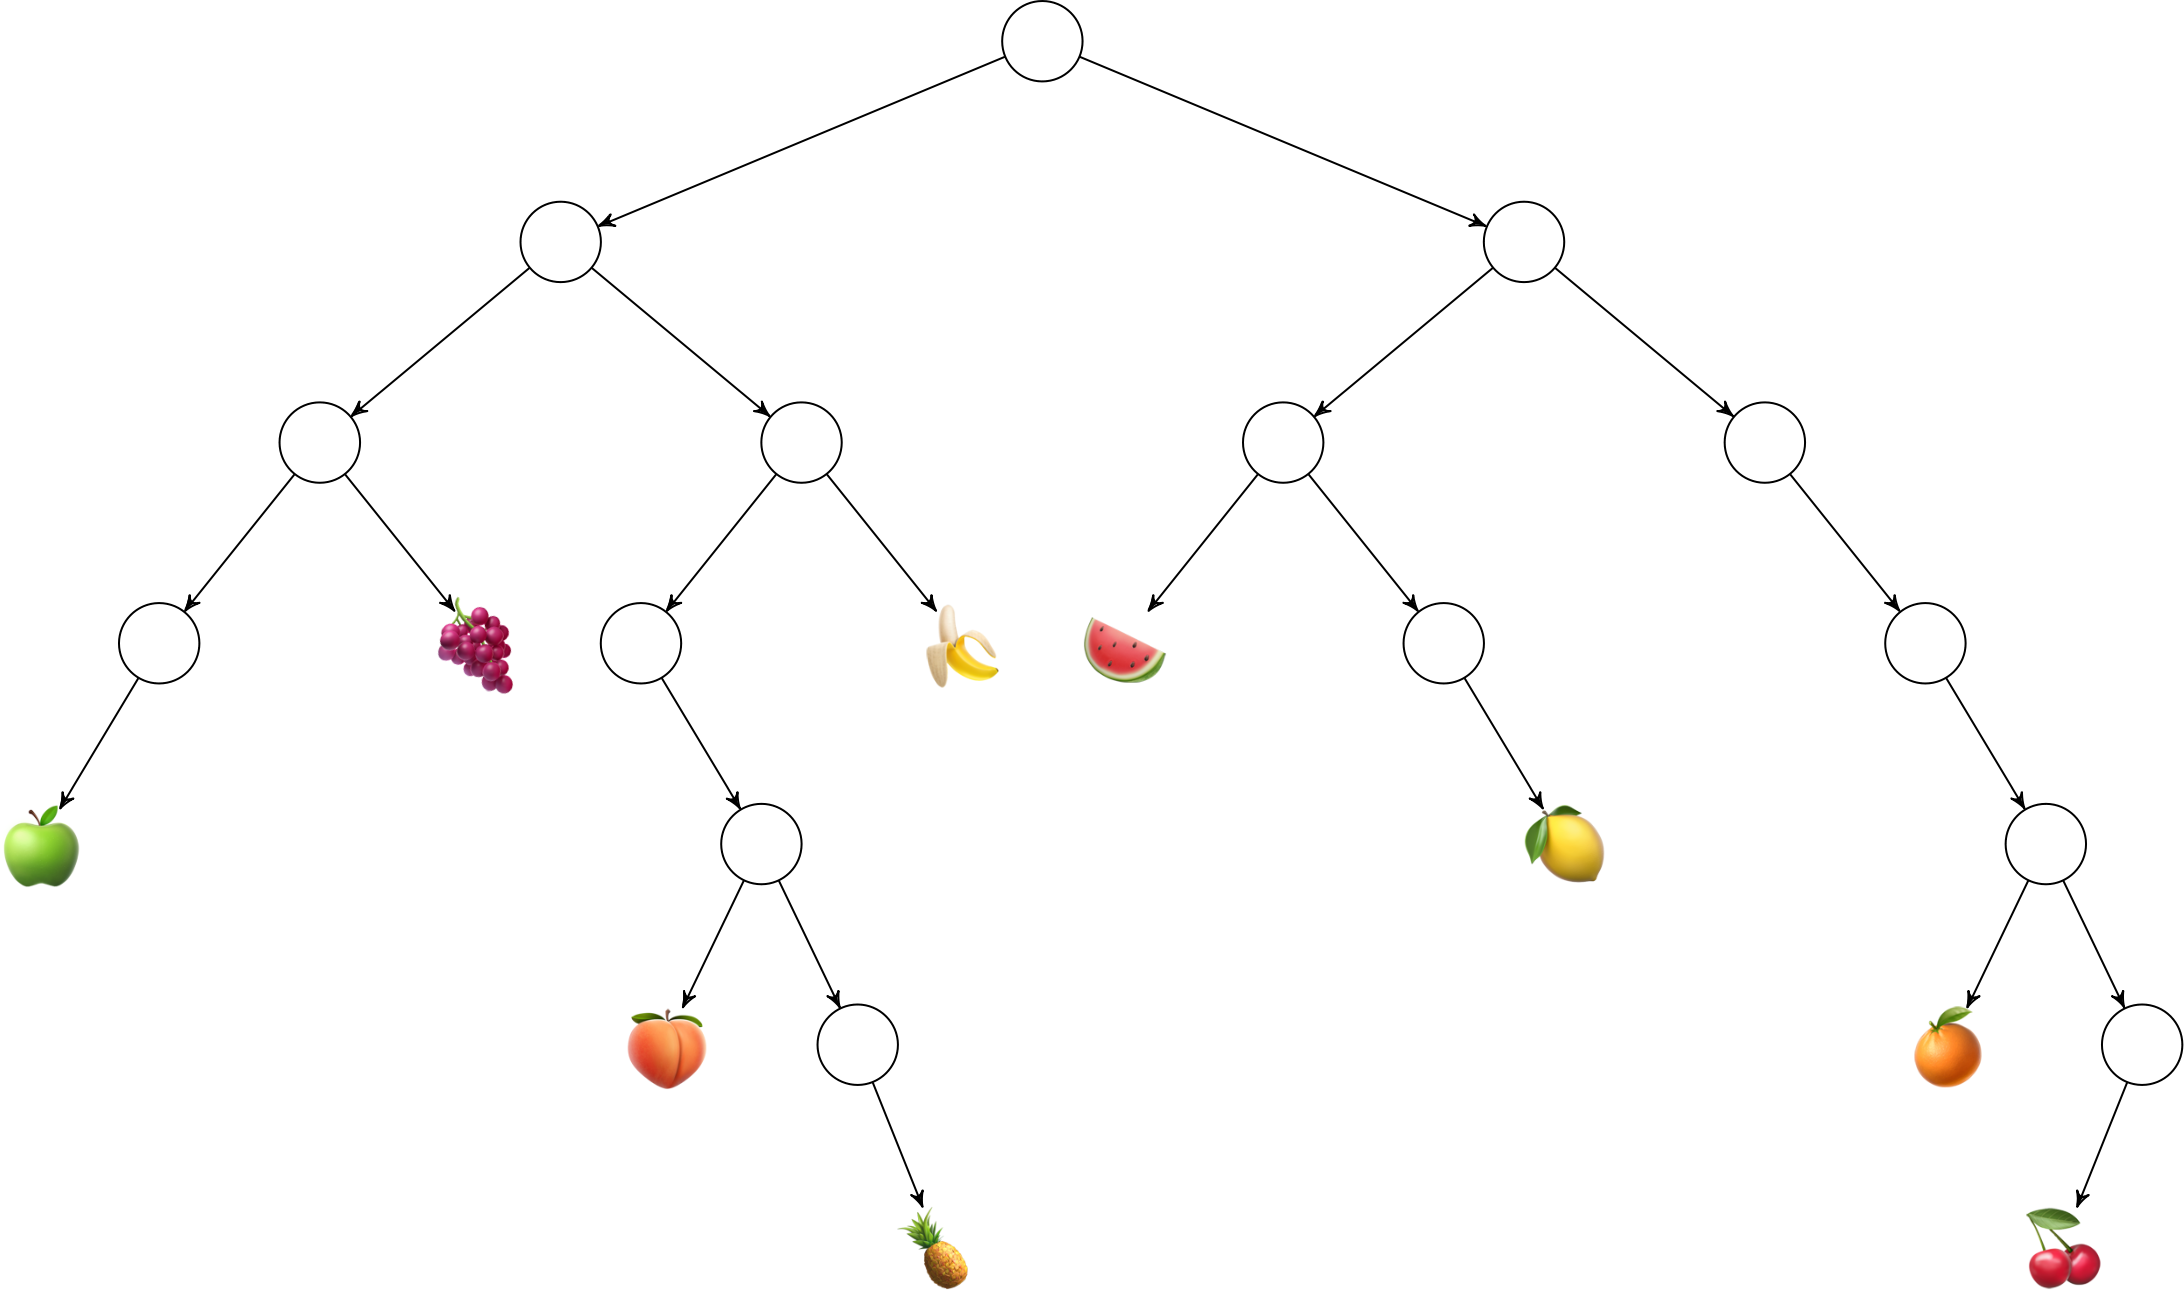 A fruit tree